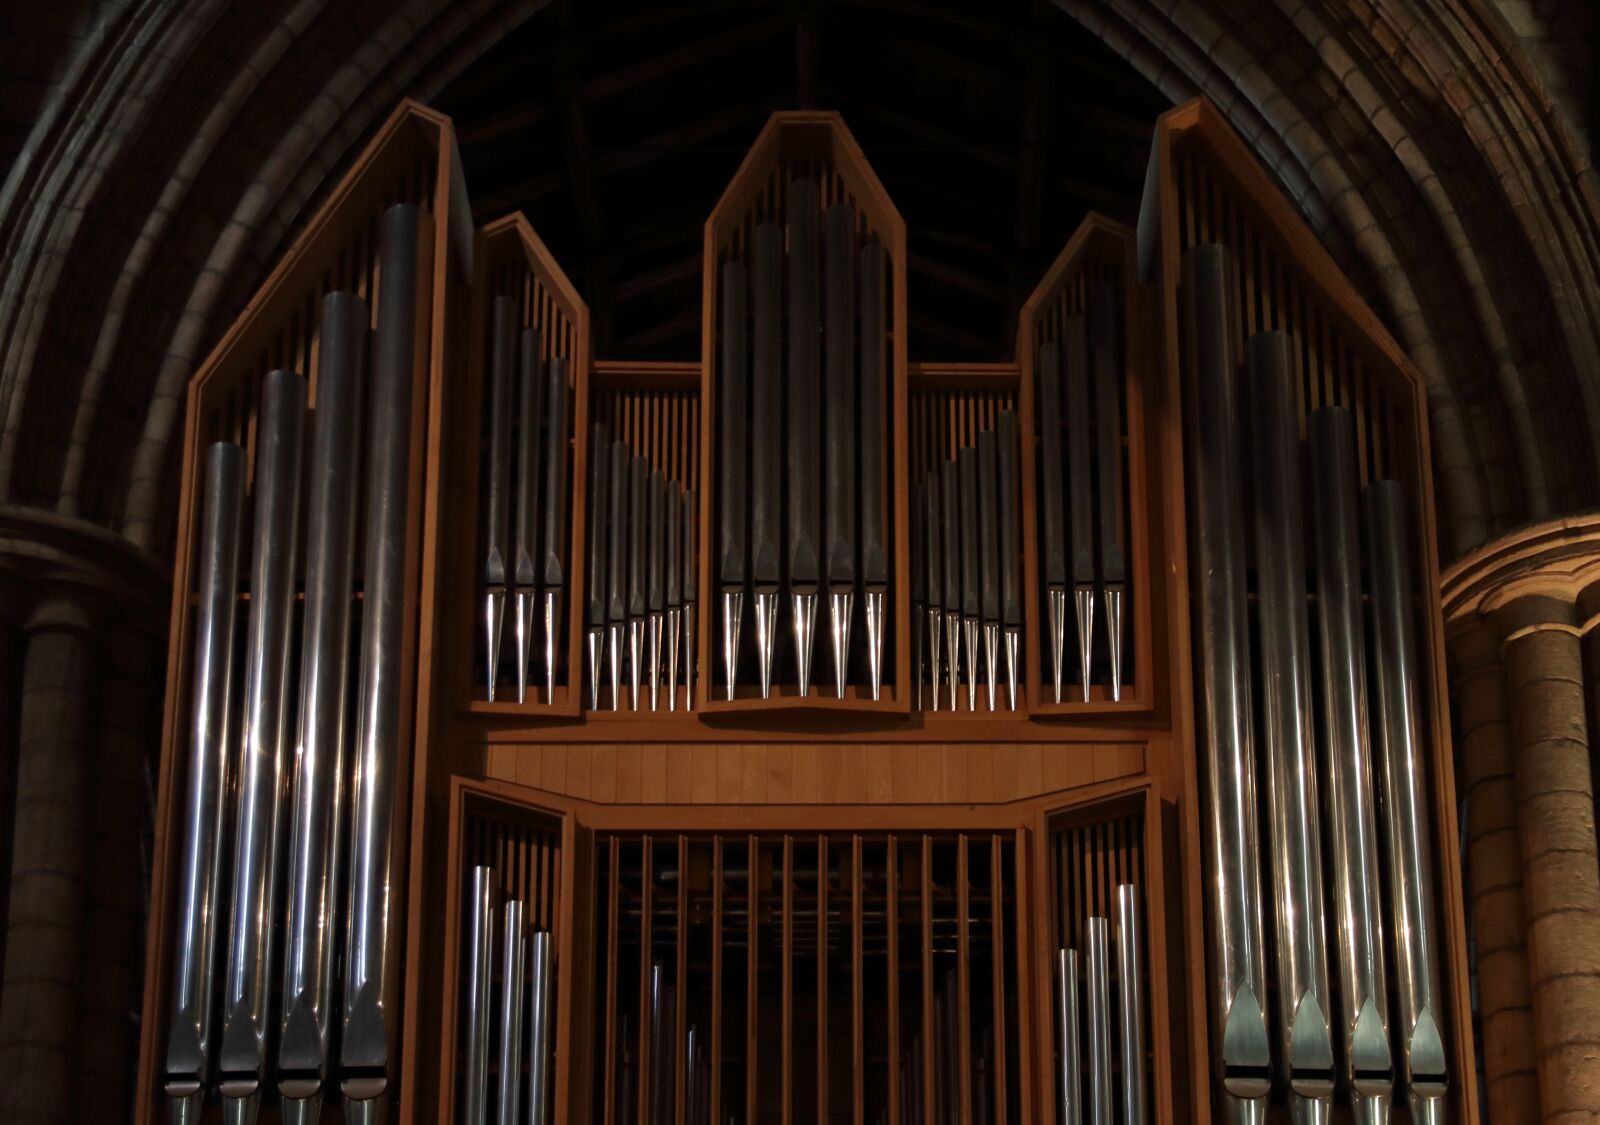 Canon EOS 80D sample photo. Church, organ, england photography